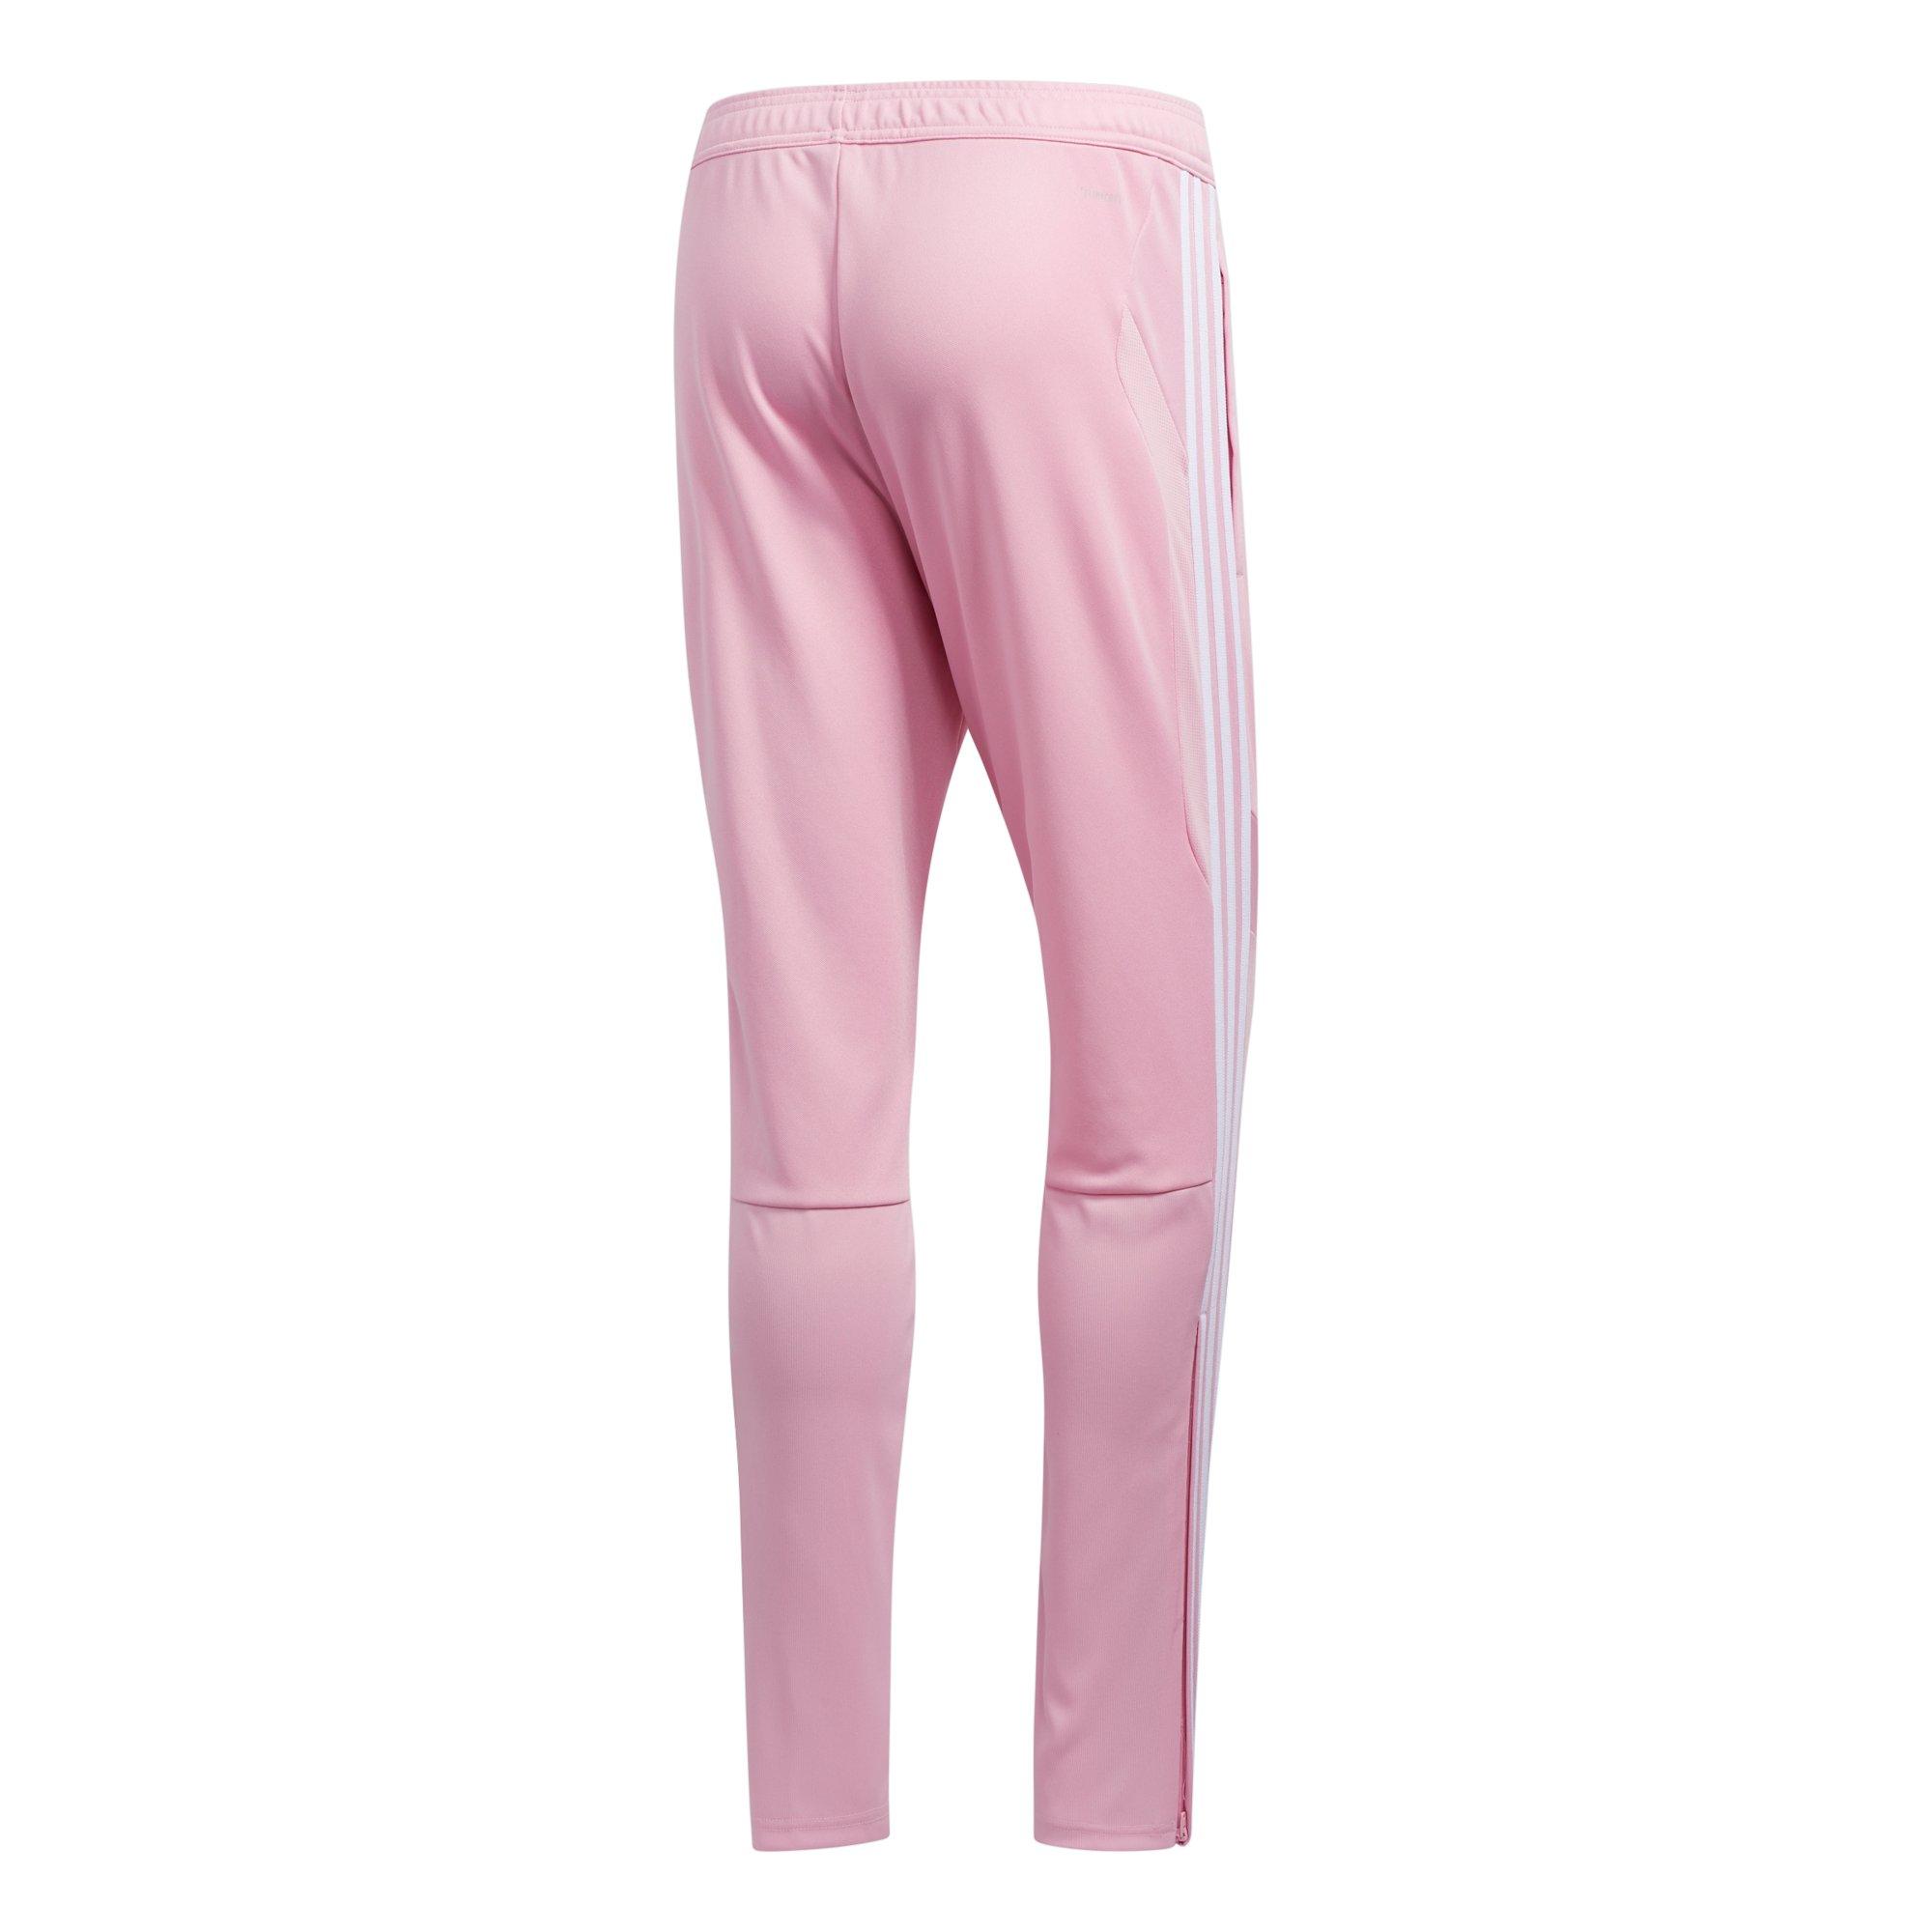 hot pink adidas pants